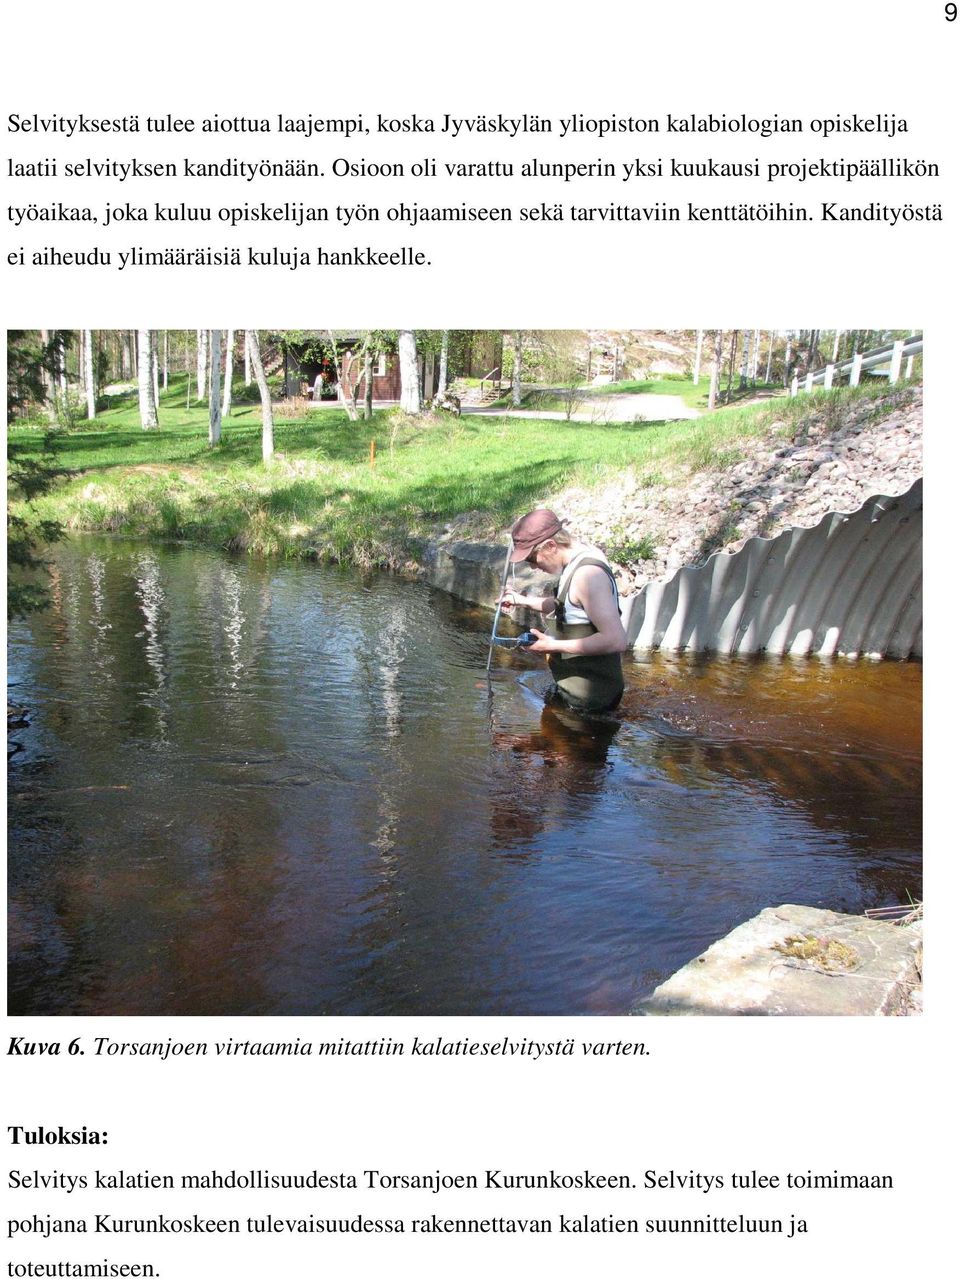 Kandityöstä ei aiheudu ylimääräisiä kuluja hankkeelle. Kuva 6. Torsanjoen virtaamia mitattiin kalatieselvitystä varten.